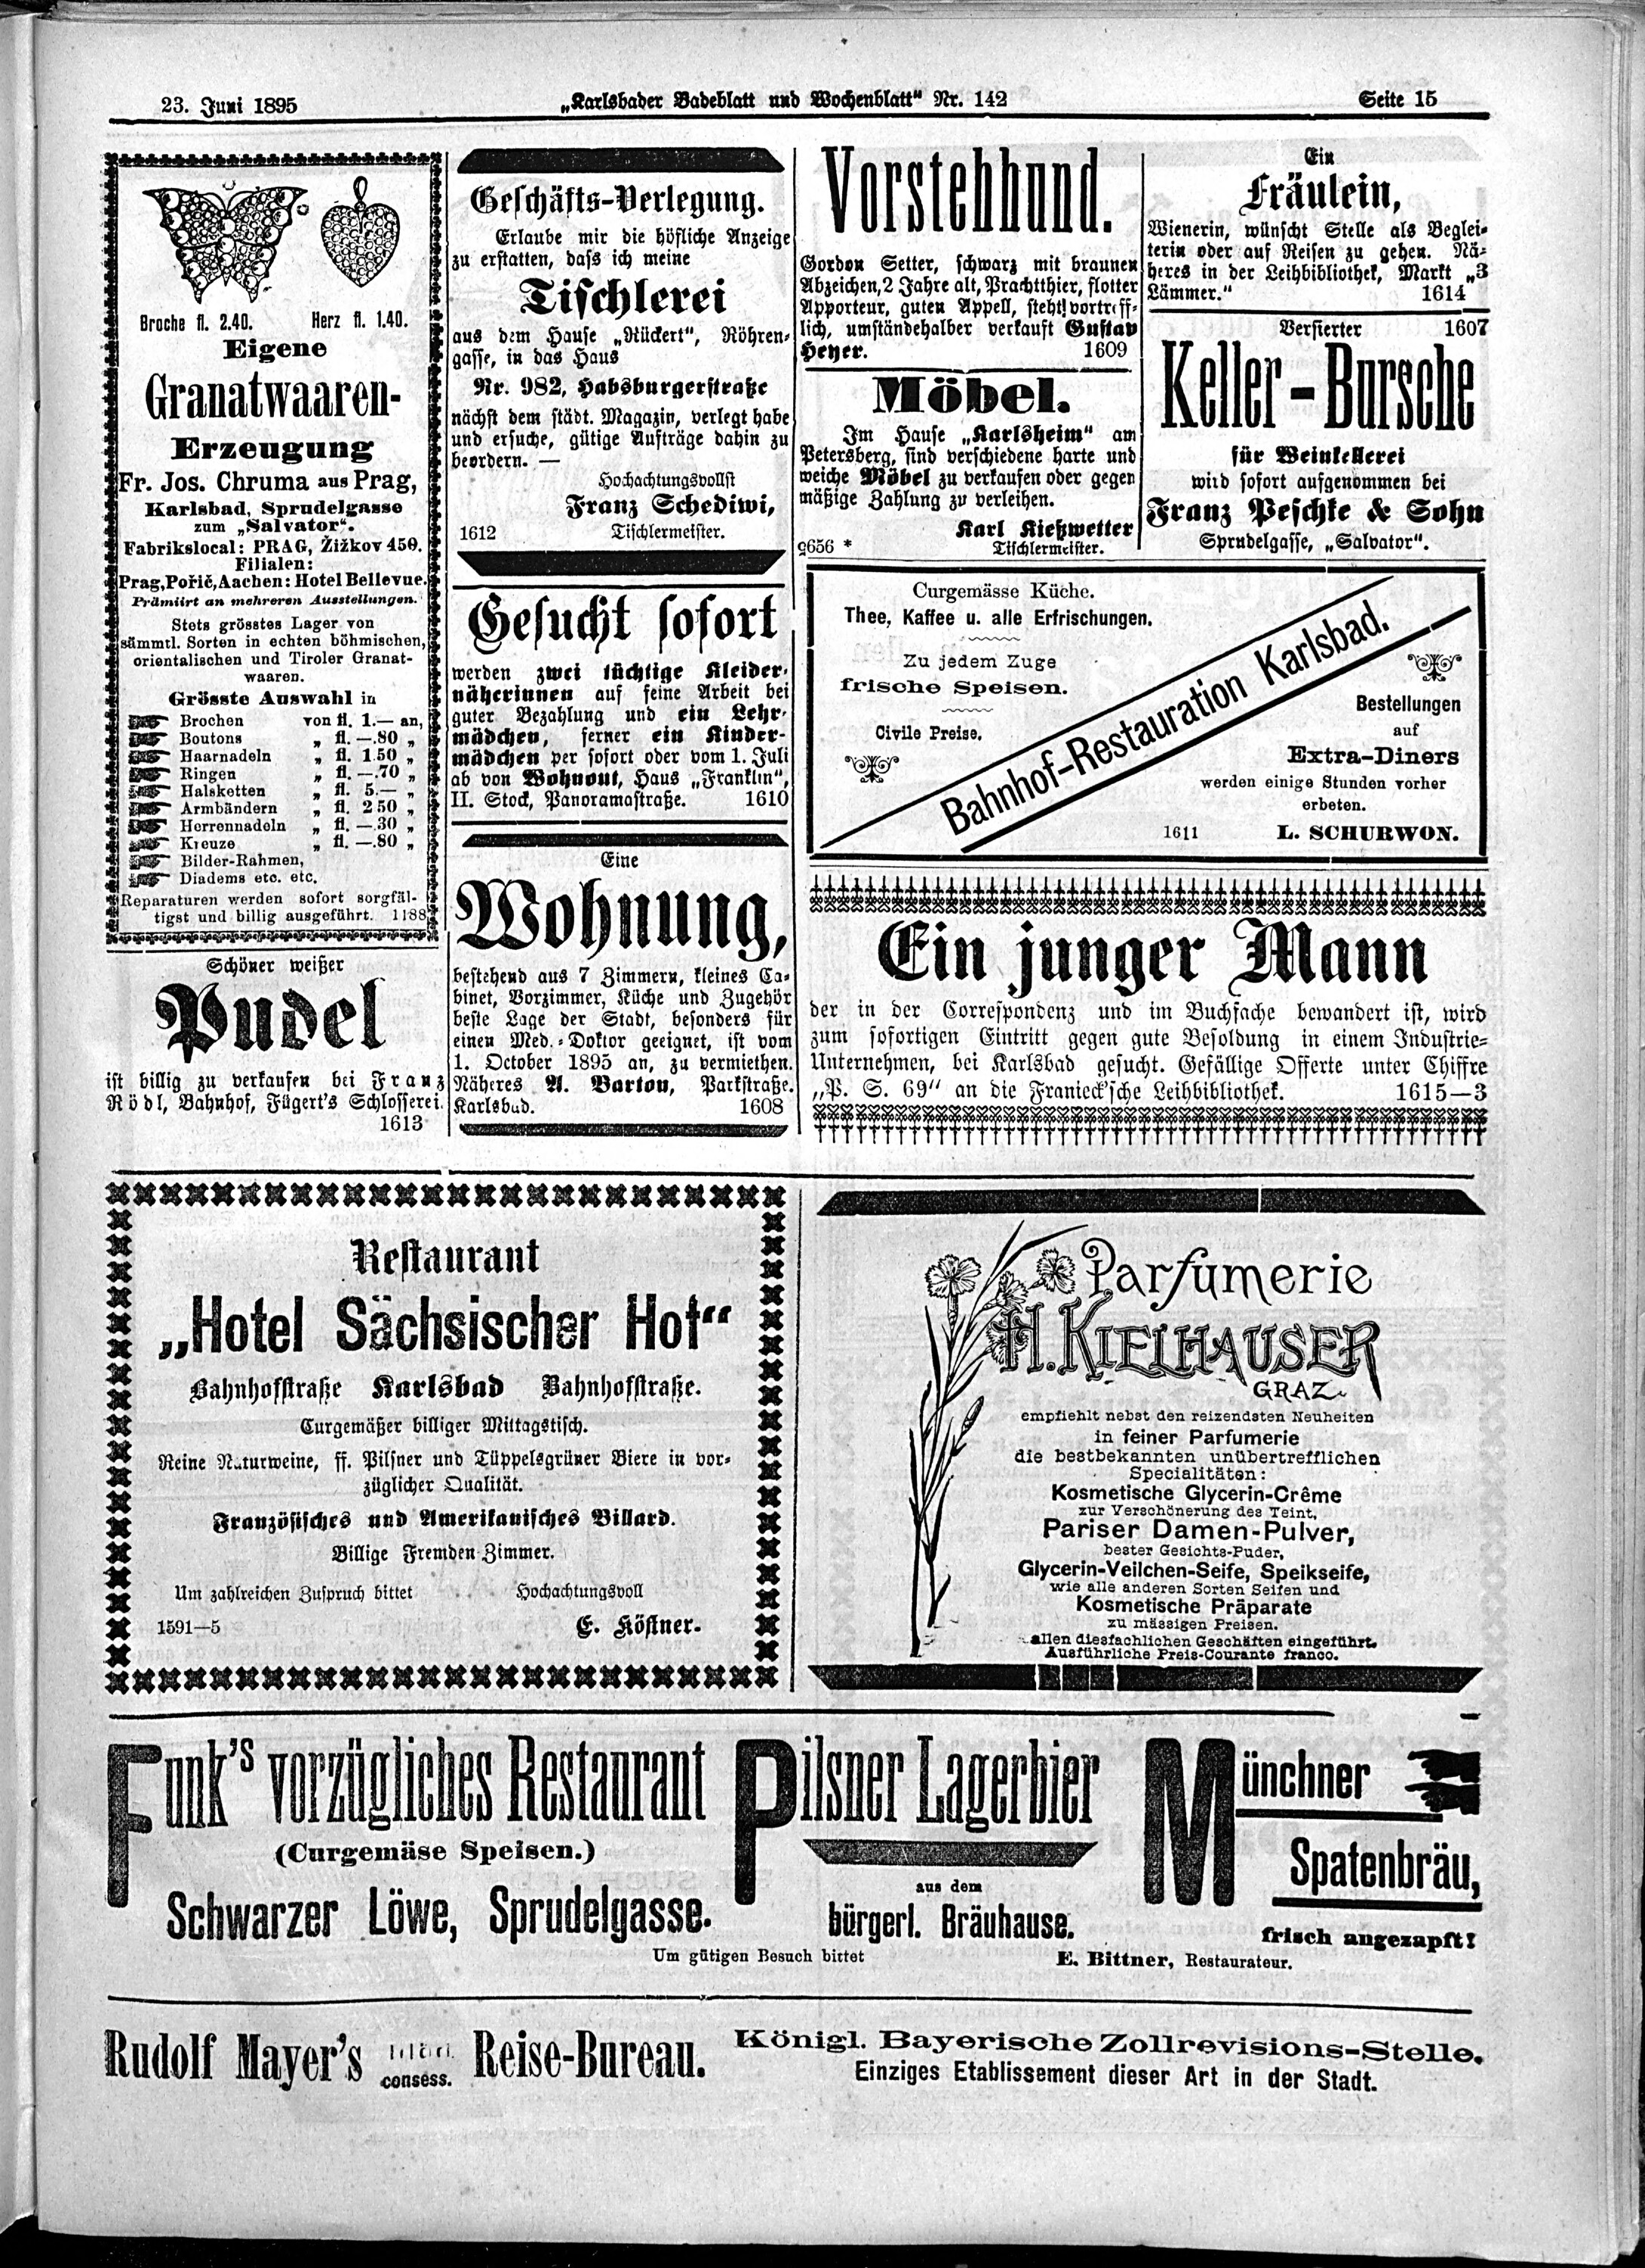 15. karlsbader-badeblatt-1895-06-23-n142_6605